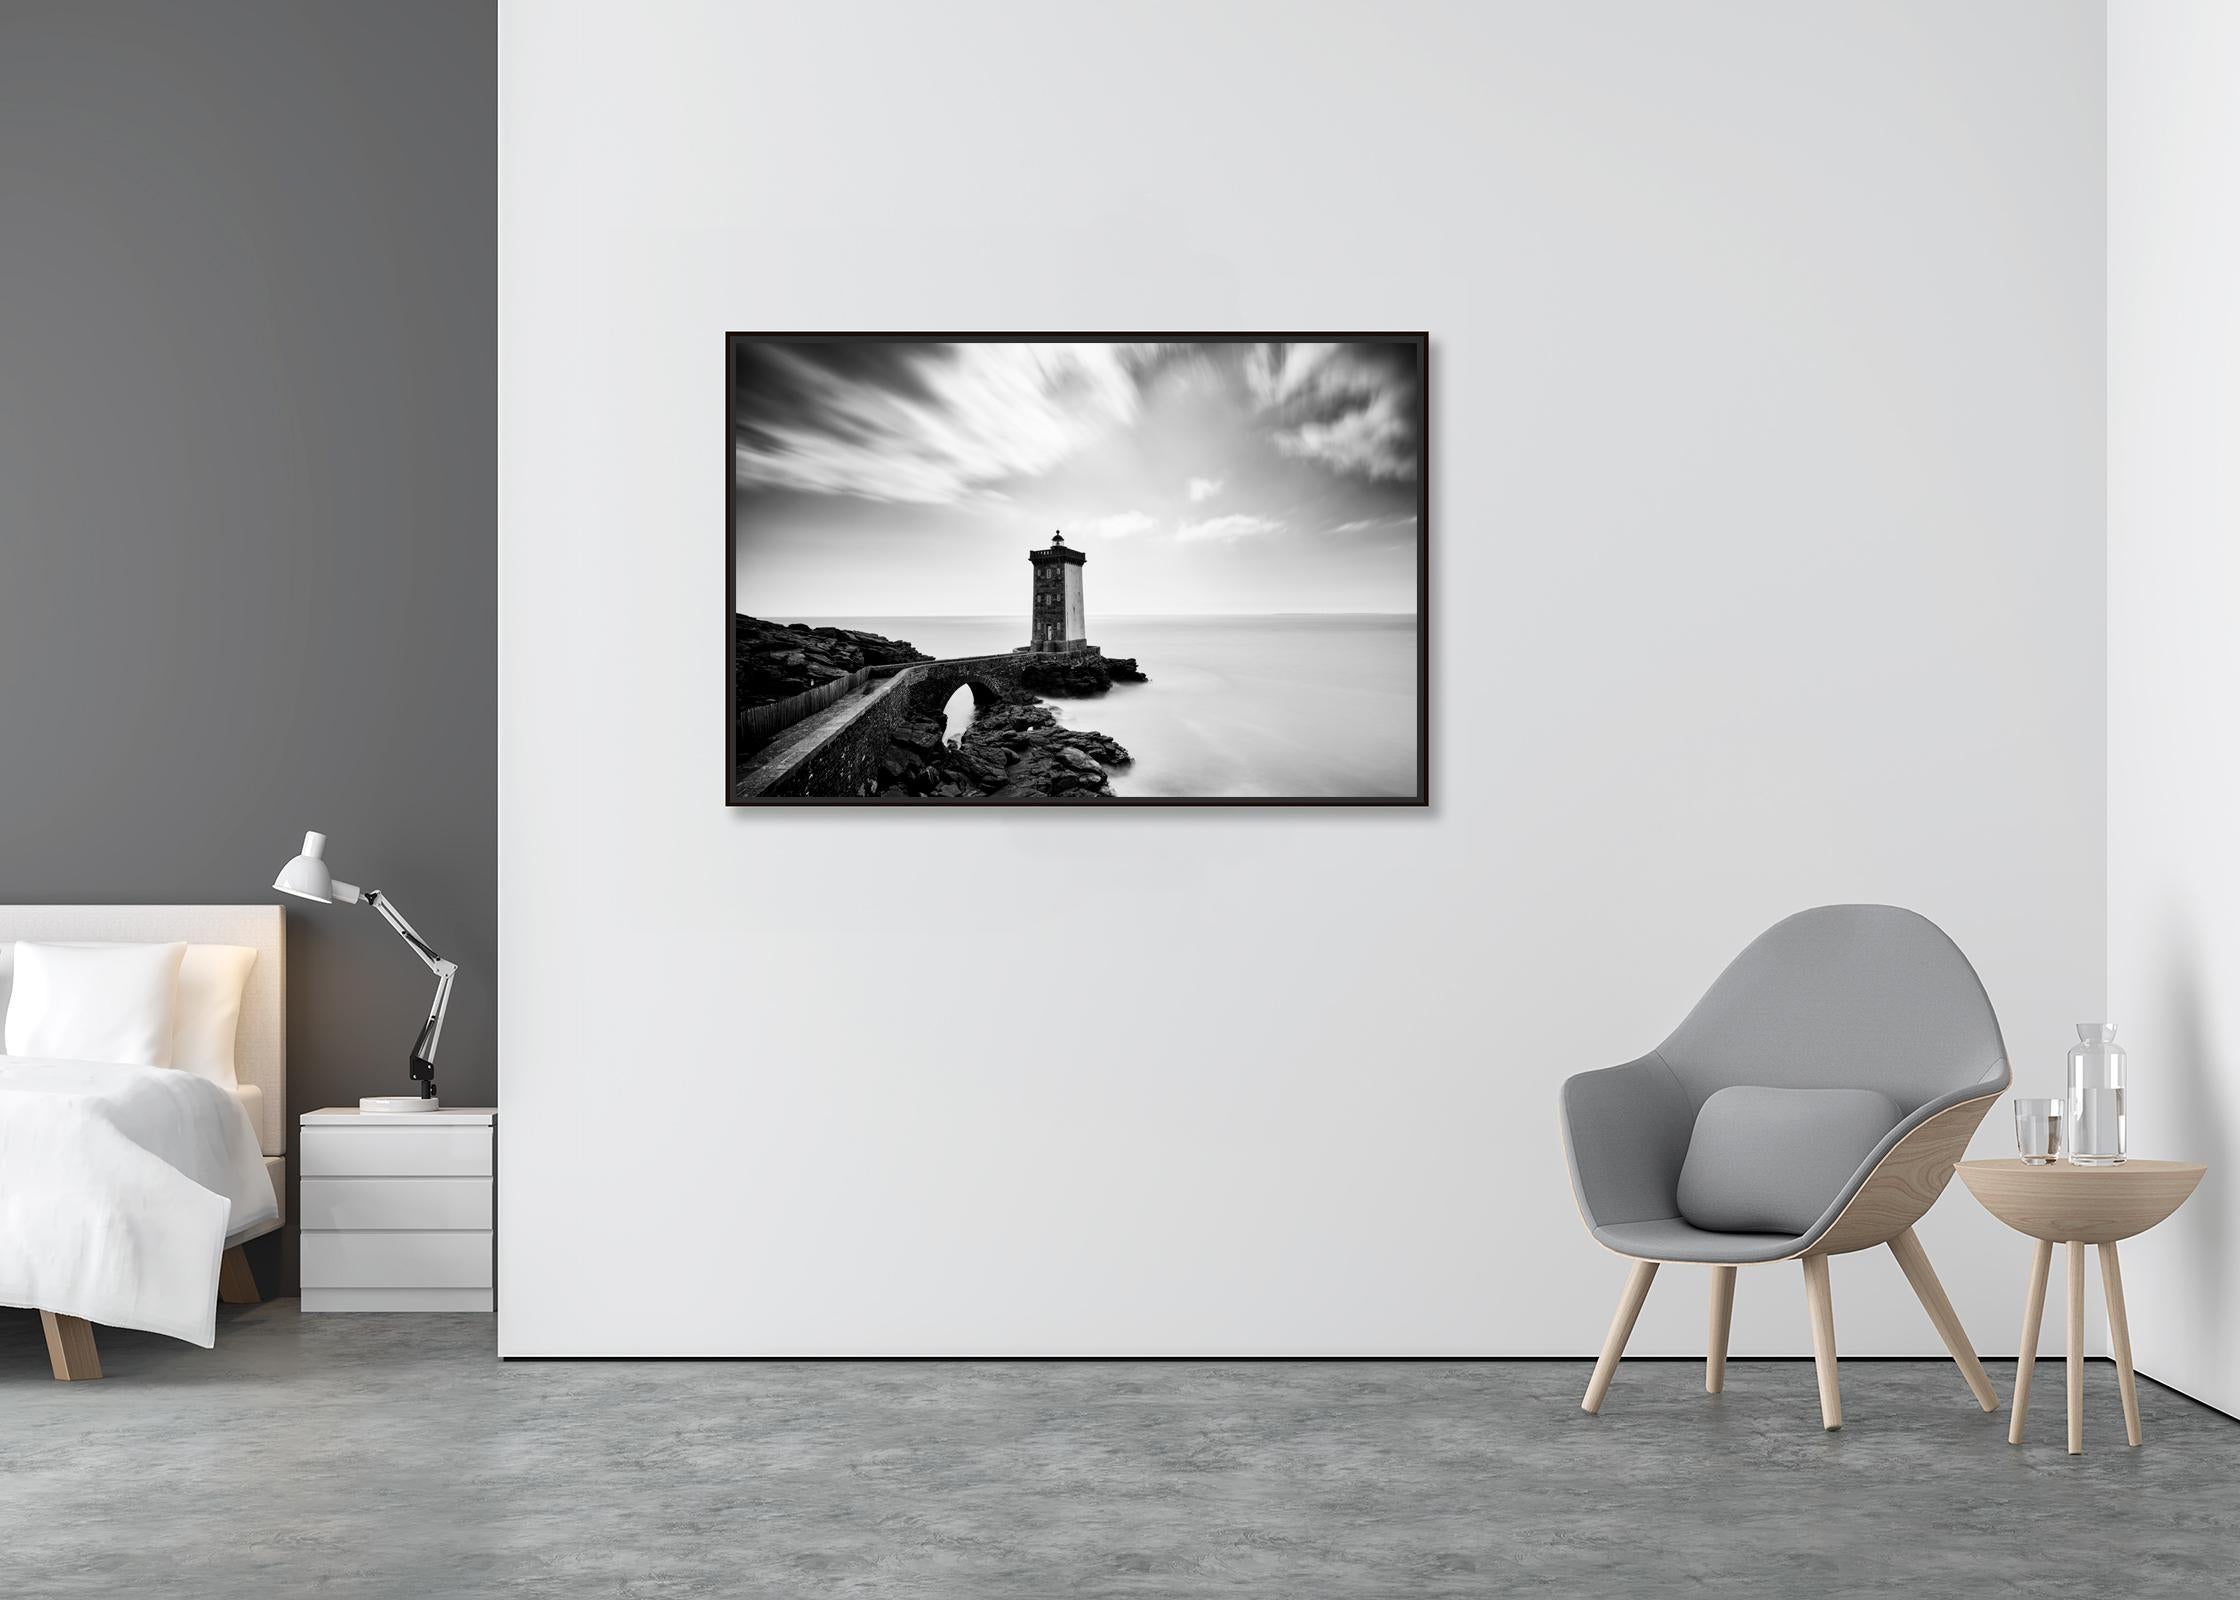 Leuchtturm, Kermorvan, Atlantik, Frankreich, schwarz-weiß Landschaftsfotografie (Zeitgenössisch), Photograph, von Gerald Berghammer